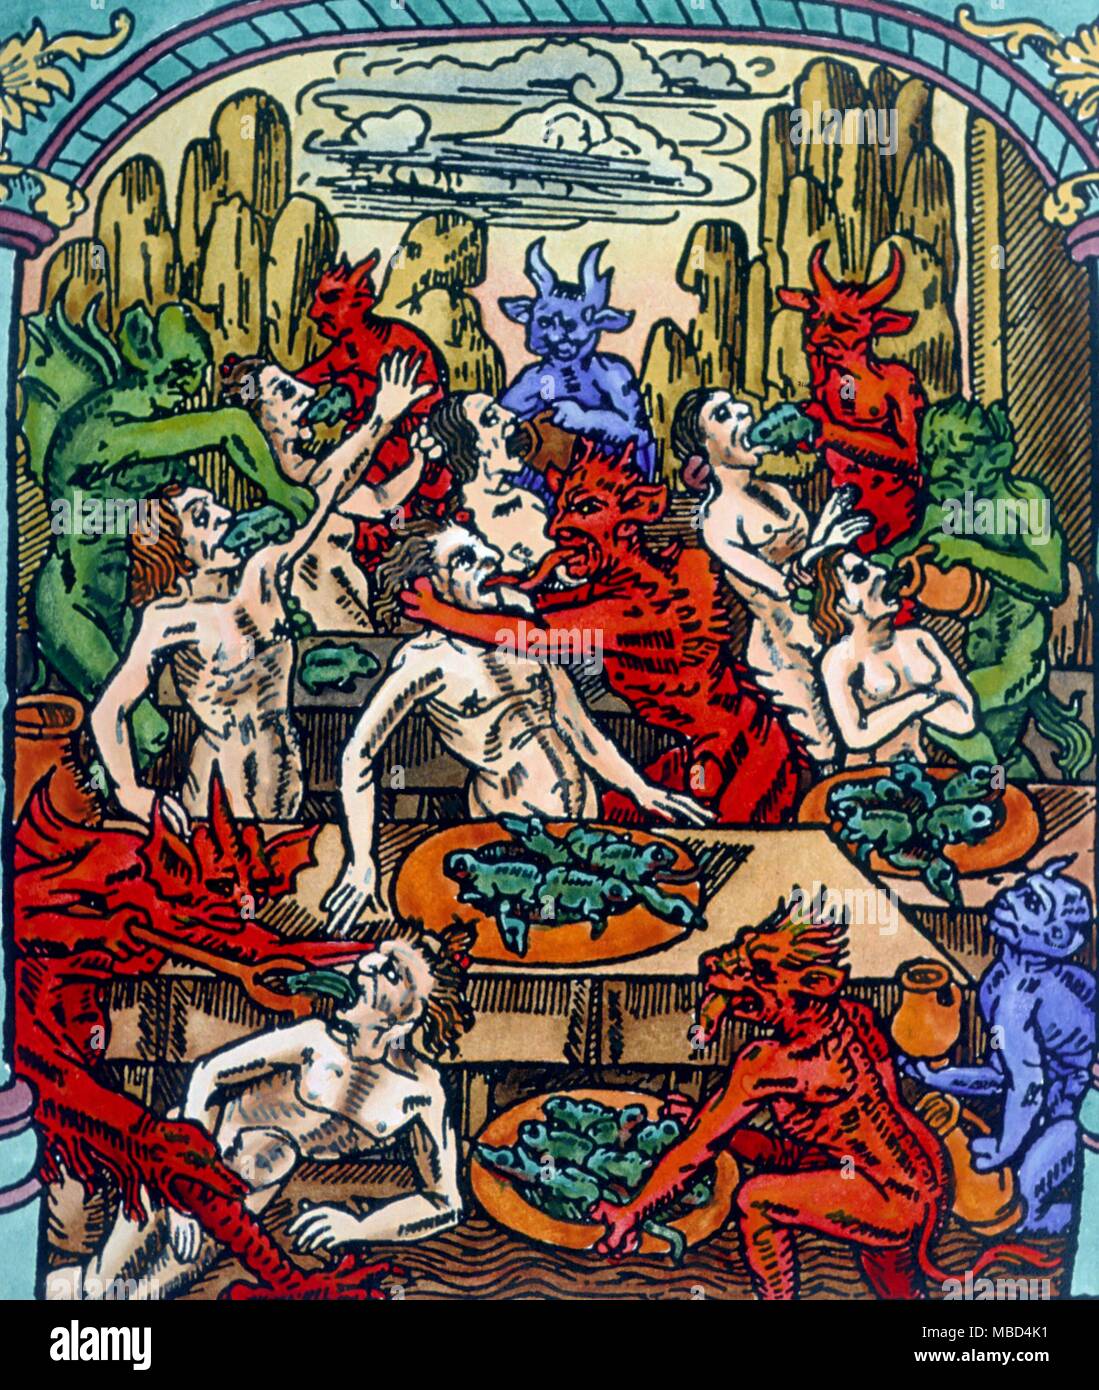 Âmes torturés en enfer par des démons. À partir de la 15e siècle Le Grant Kalendrier et compost des Bergiers, avecq leur astrologie, imprimé par Nicolas le rouge de Troyes.- Banque D'Images